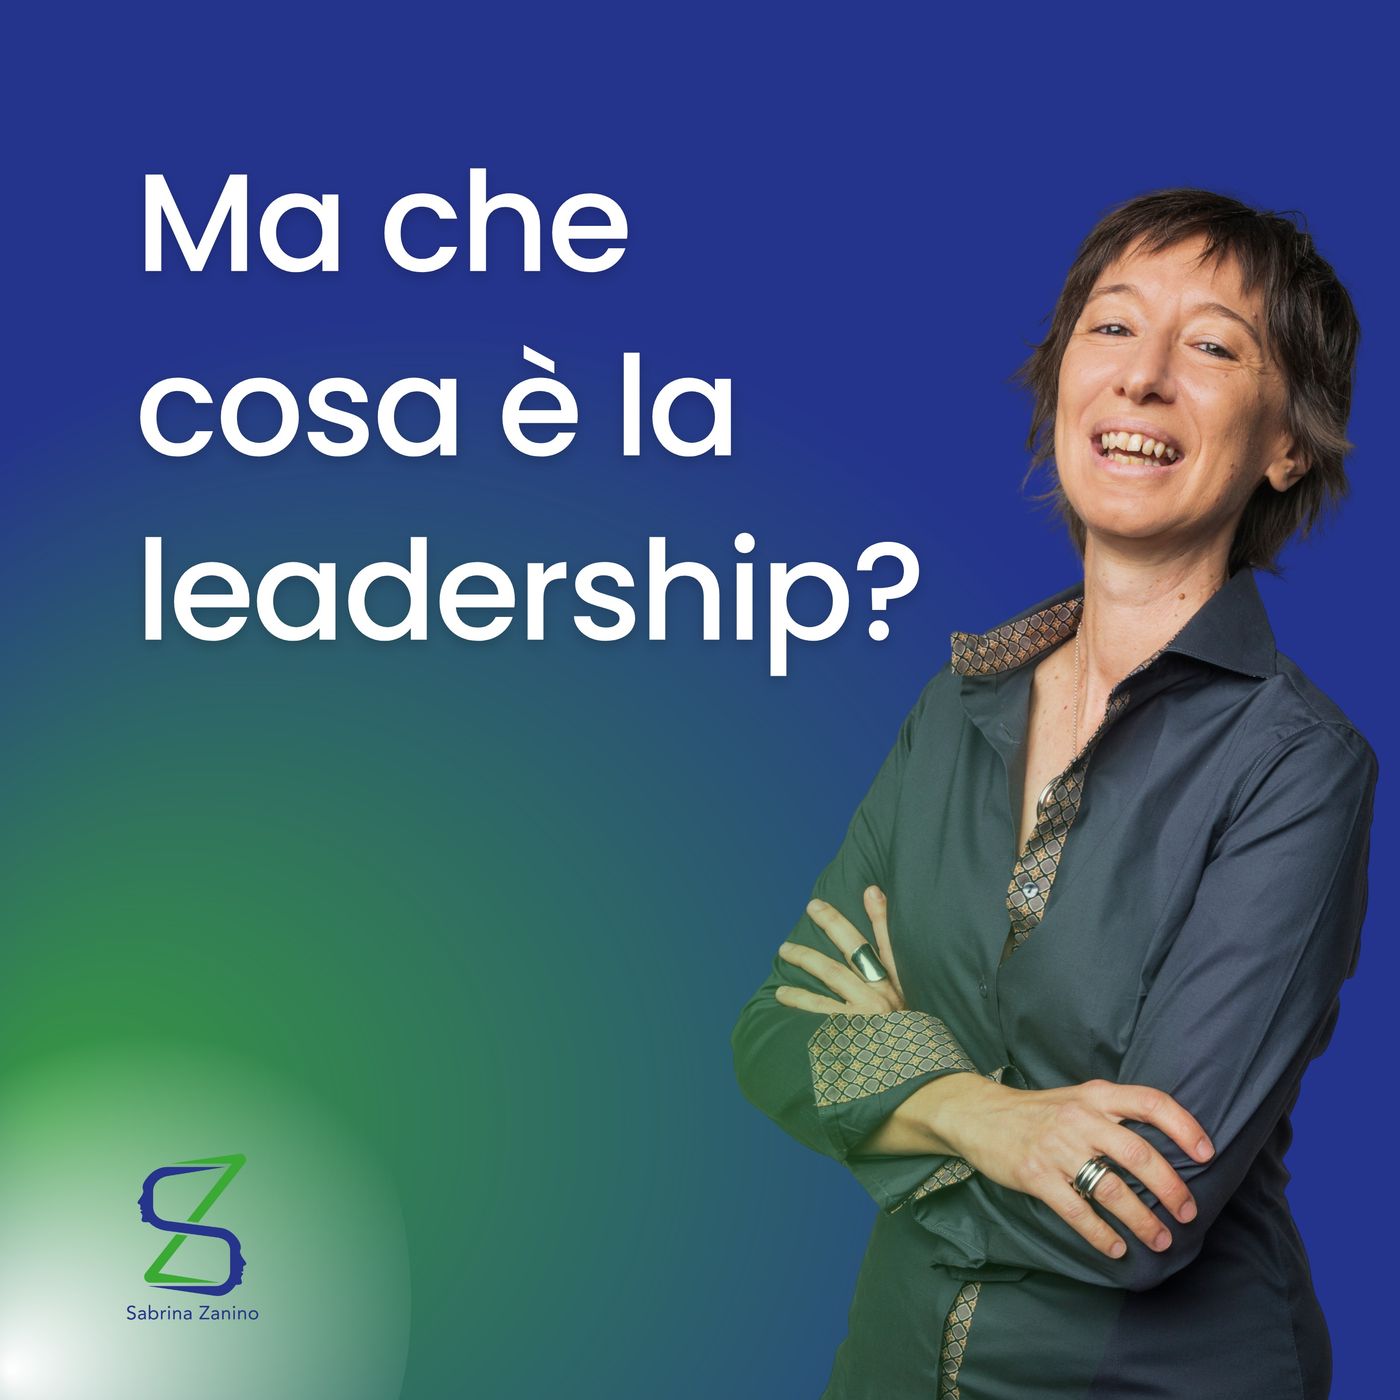 100 - Ma che cosa è la leadership?